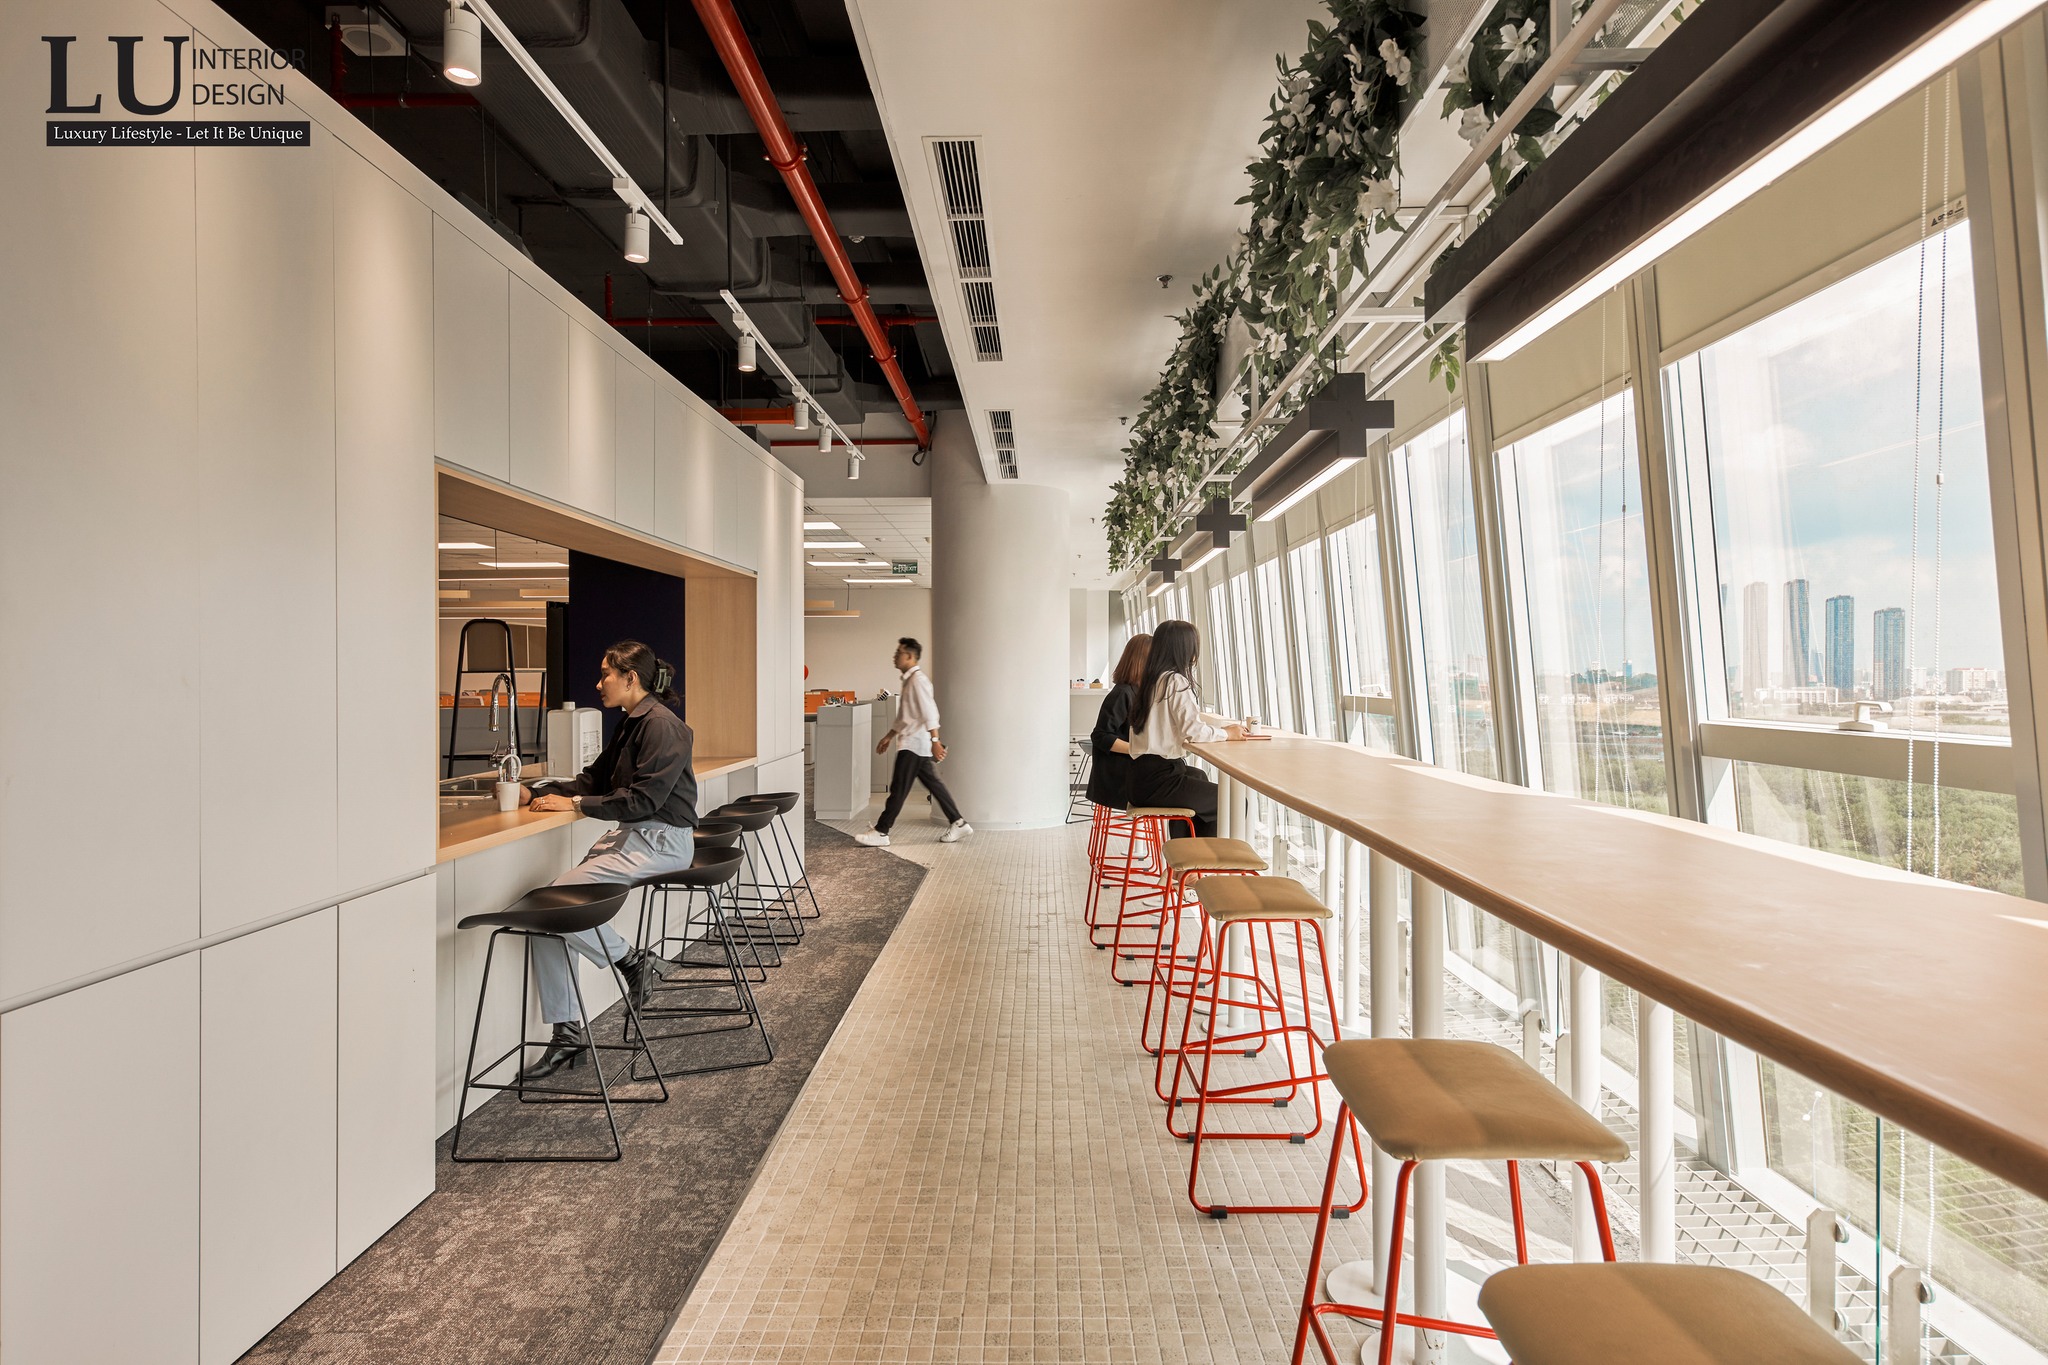 Dịch vụ thiết kế nội thất uy tín trọn gói giúp doanh nghiệp tiết kiệm thời gian và công sức | Khu Pantry - Dự án Văn phòng Thiên Long - LU Design thực hiện.